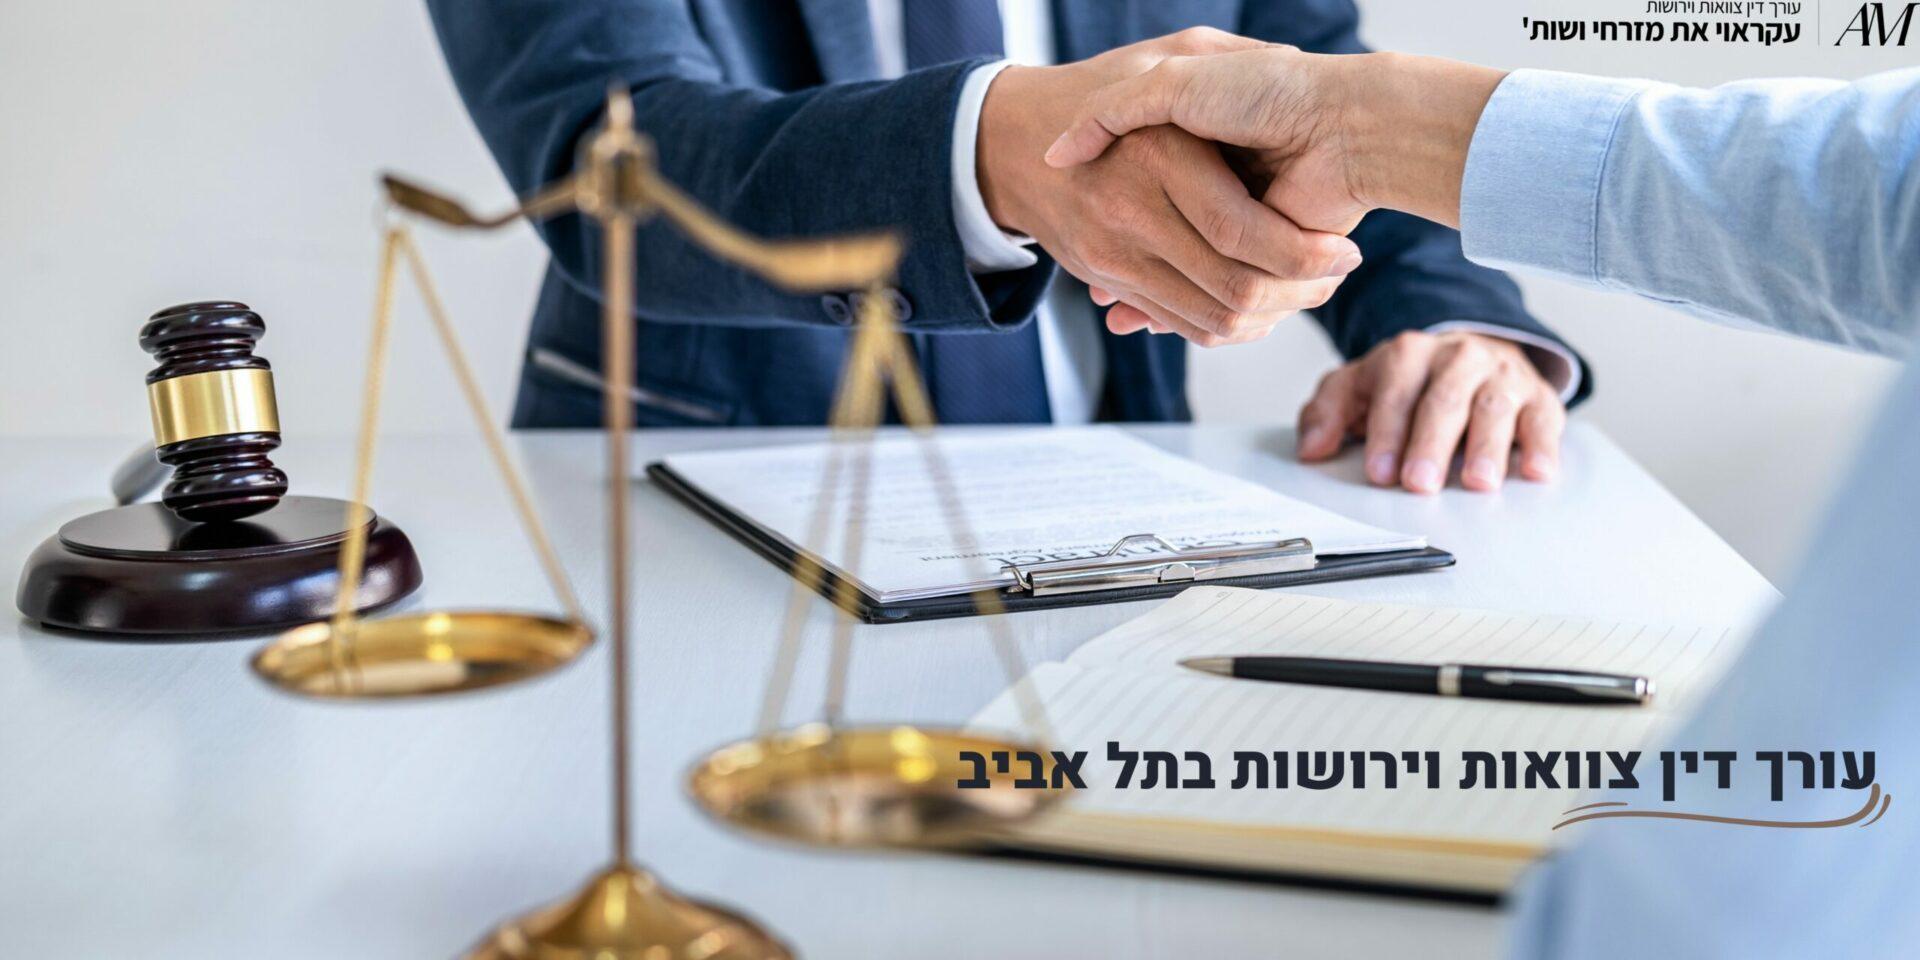 עורך דין צוואות וירושות בתל אביב - עורכי דין עקראוי את מזרחי ושות'